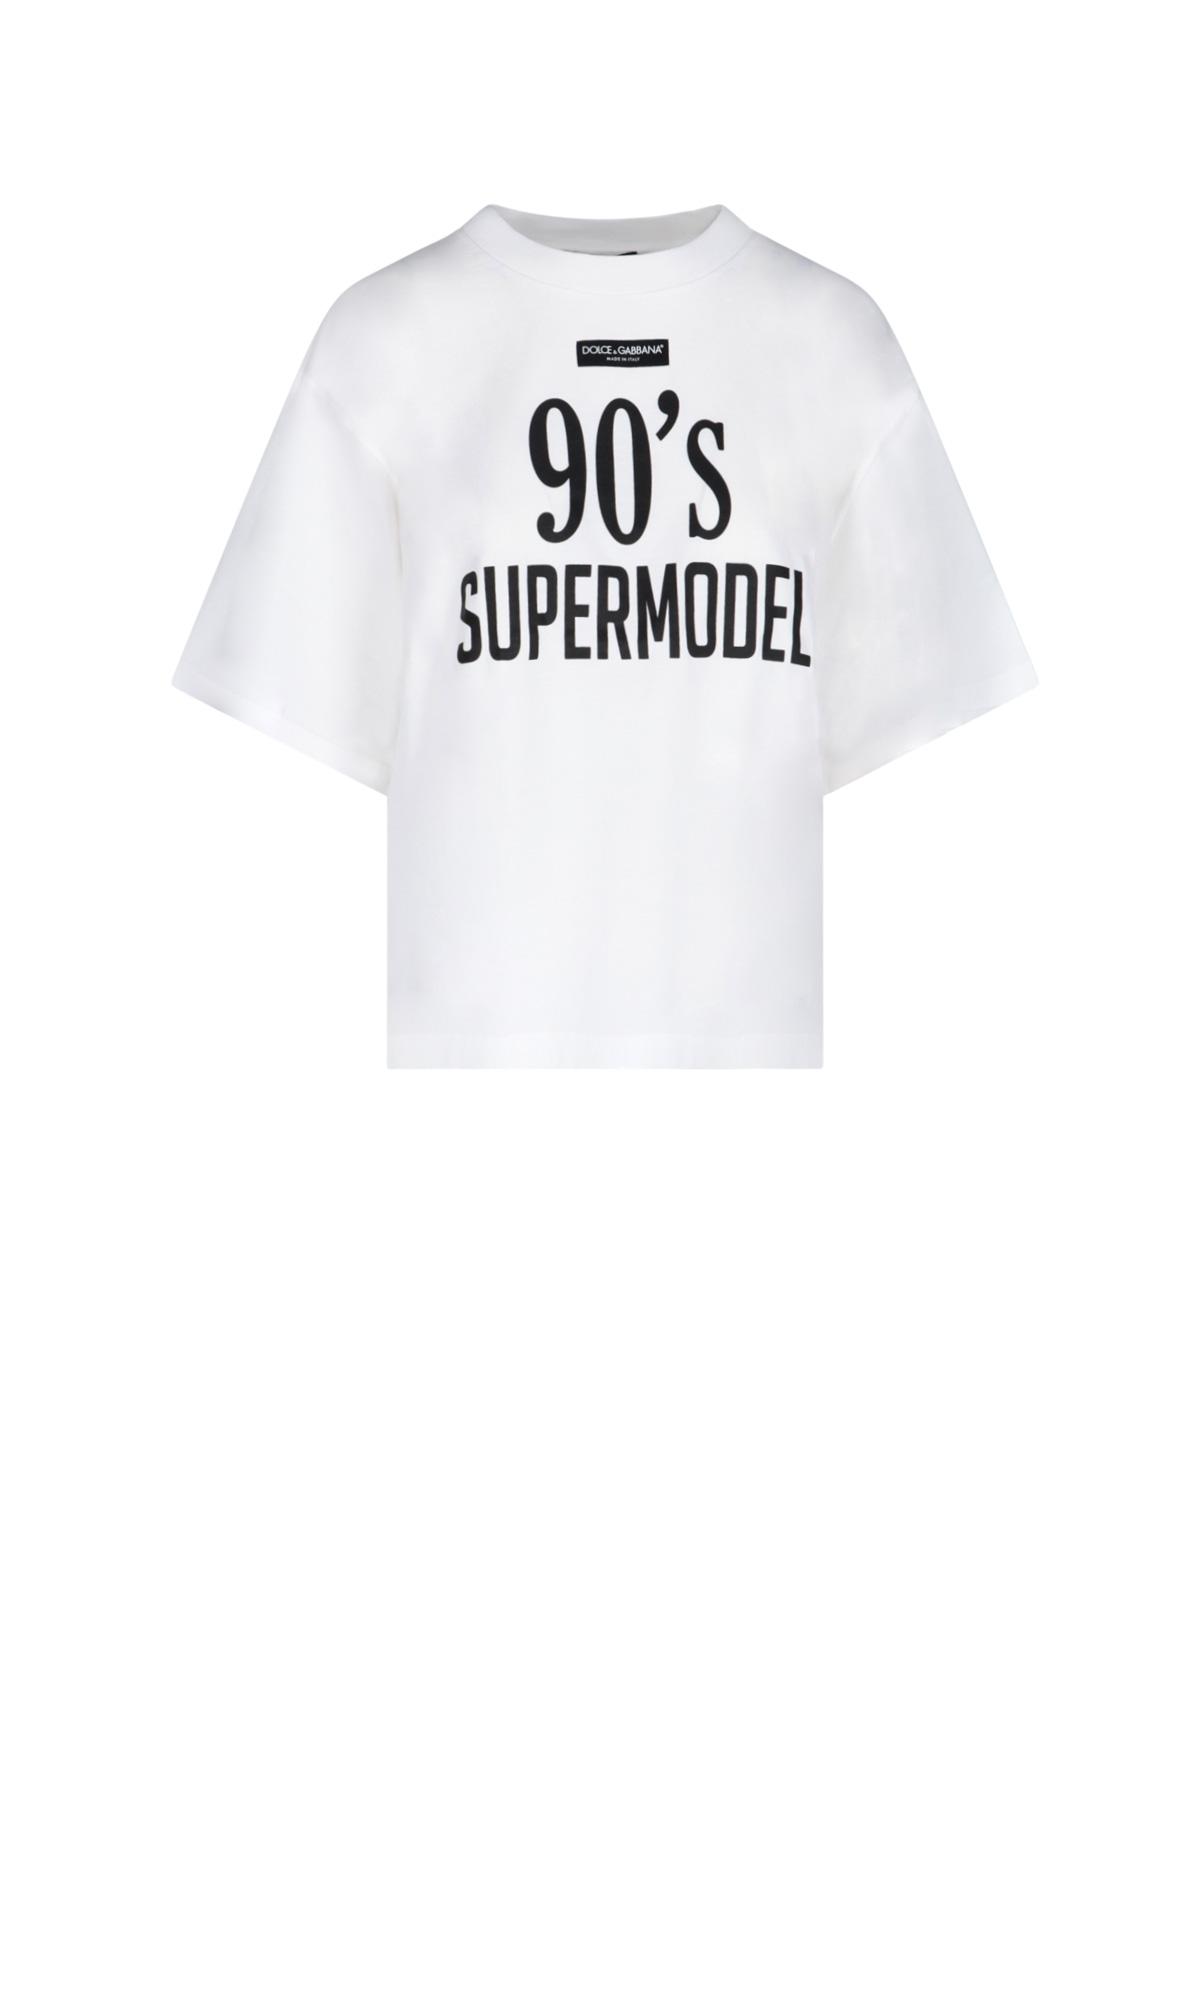 Dolce & Gabbana "90's Supermodel" Oversized T-shirt in White | Lyst